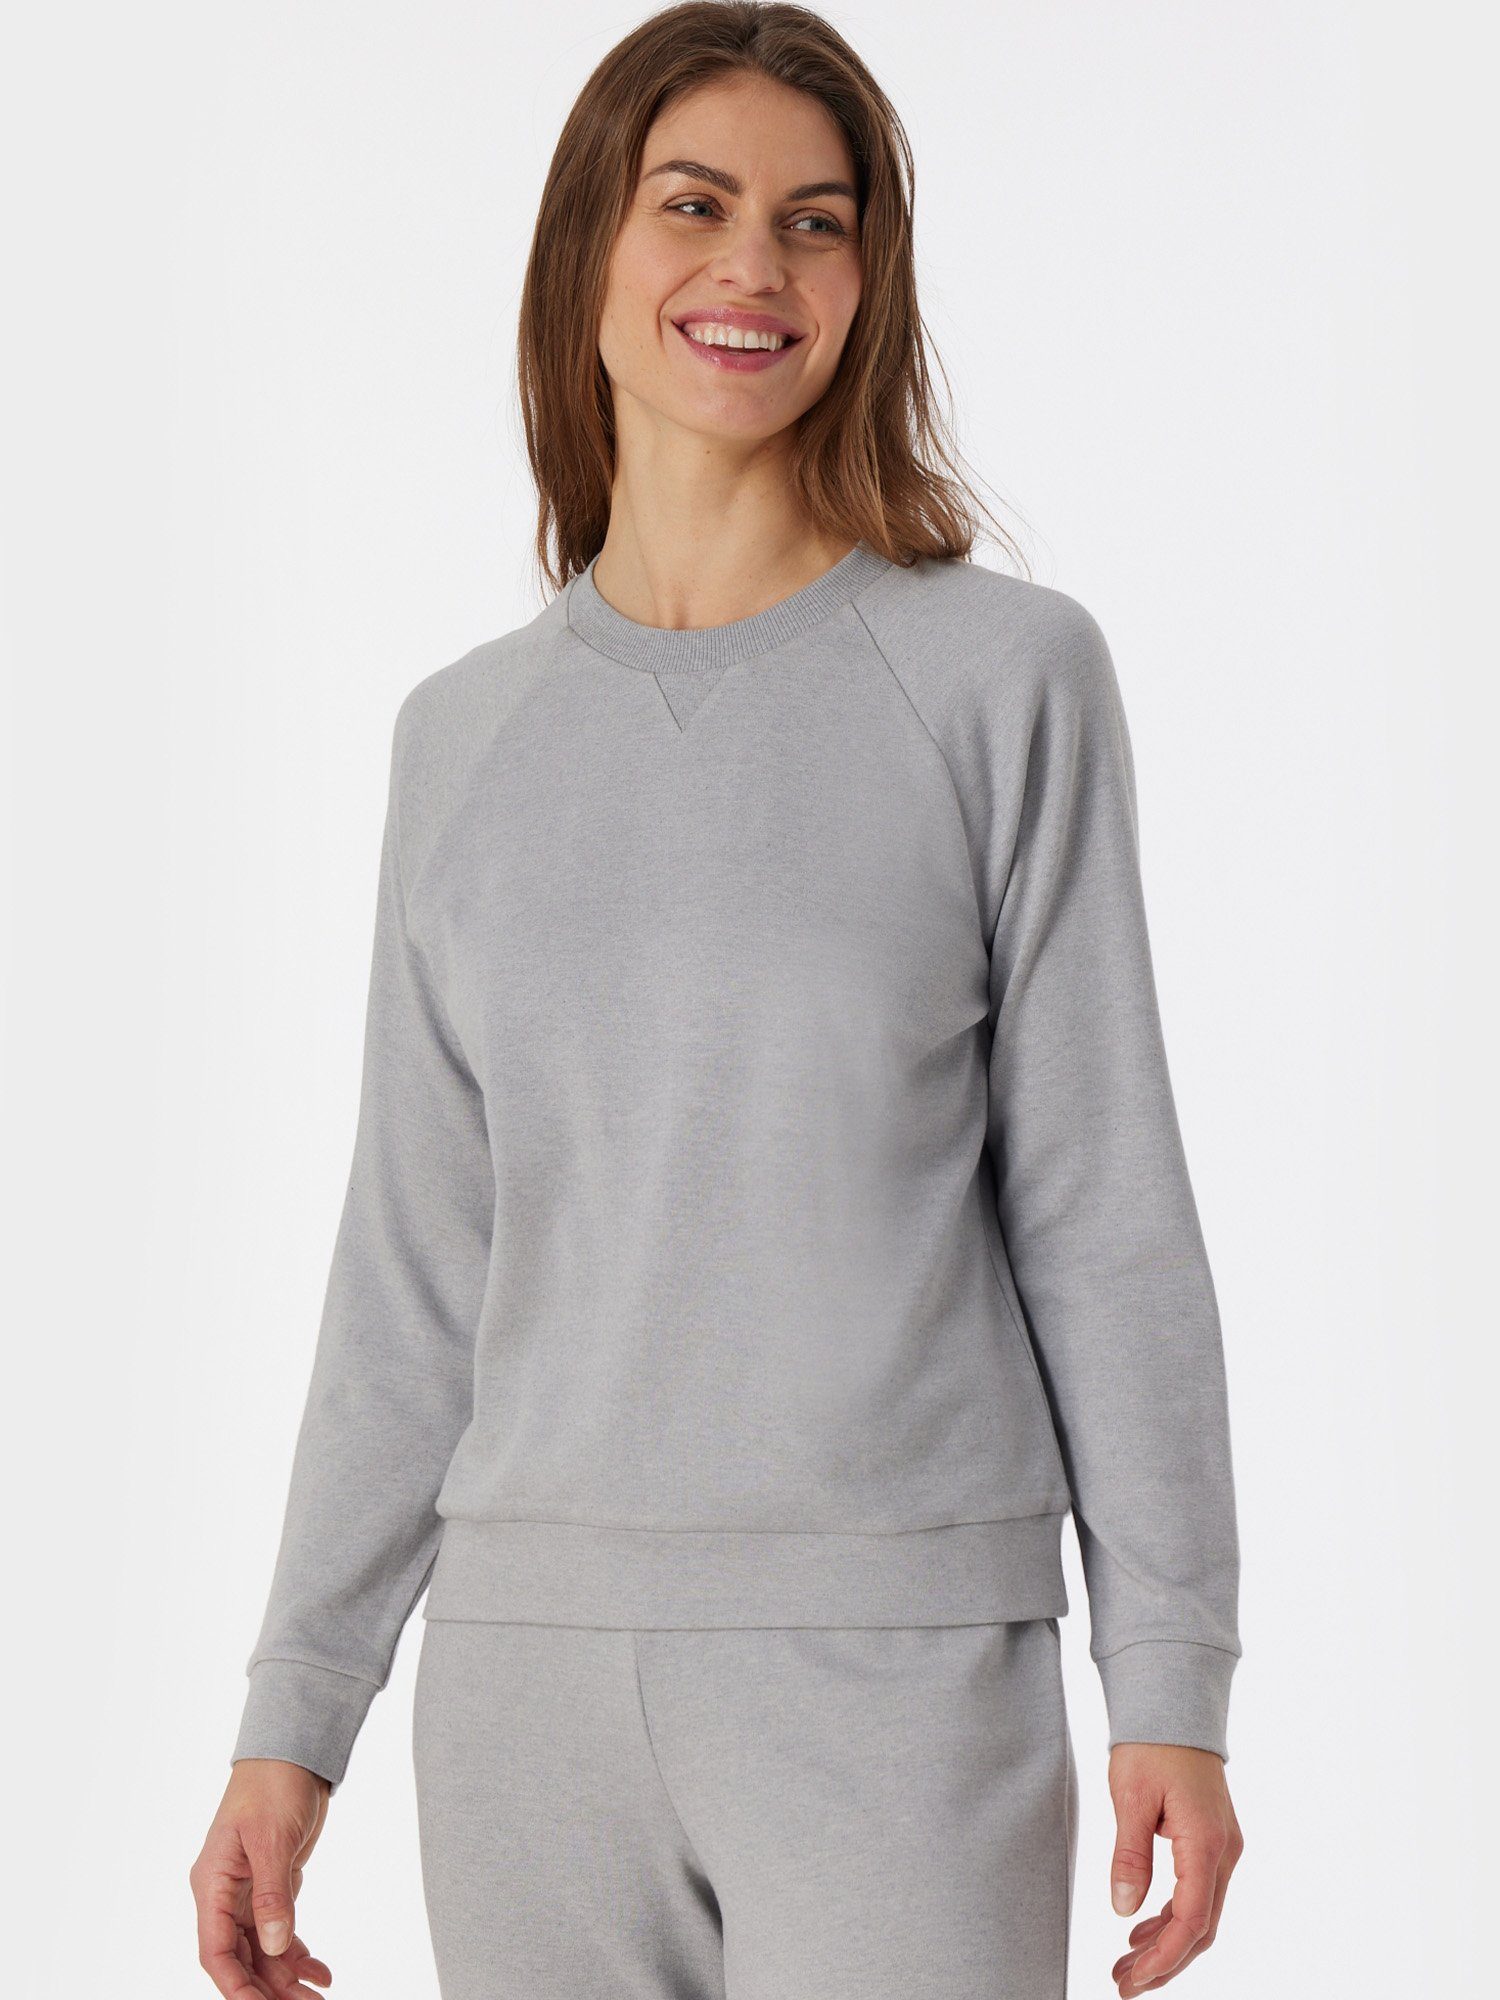 pullover & Schiesser grau-mel. Sweatshirt Sweatshirt Mix Relax pulli